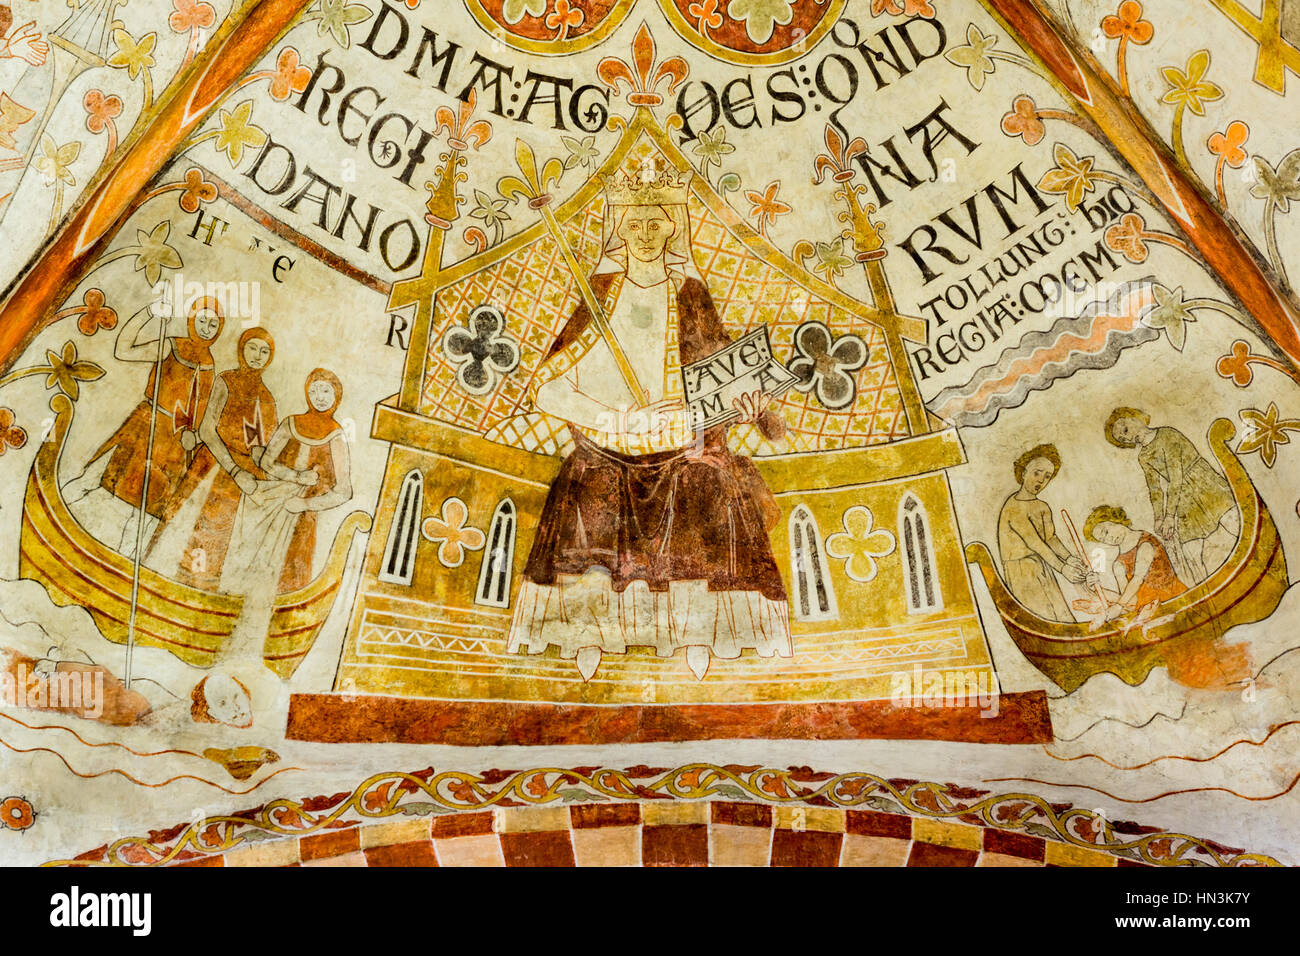 Königin Agnes und der Ermordung von König Erik Ploughpenny, Romanescue Fresko in der Kirche St. Bendt Ringsted, Dänemark - 20. Februar 2015 Stockfoto